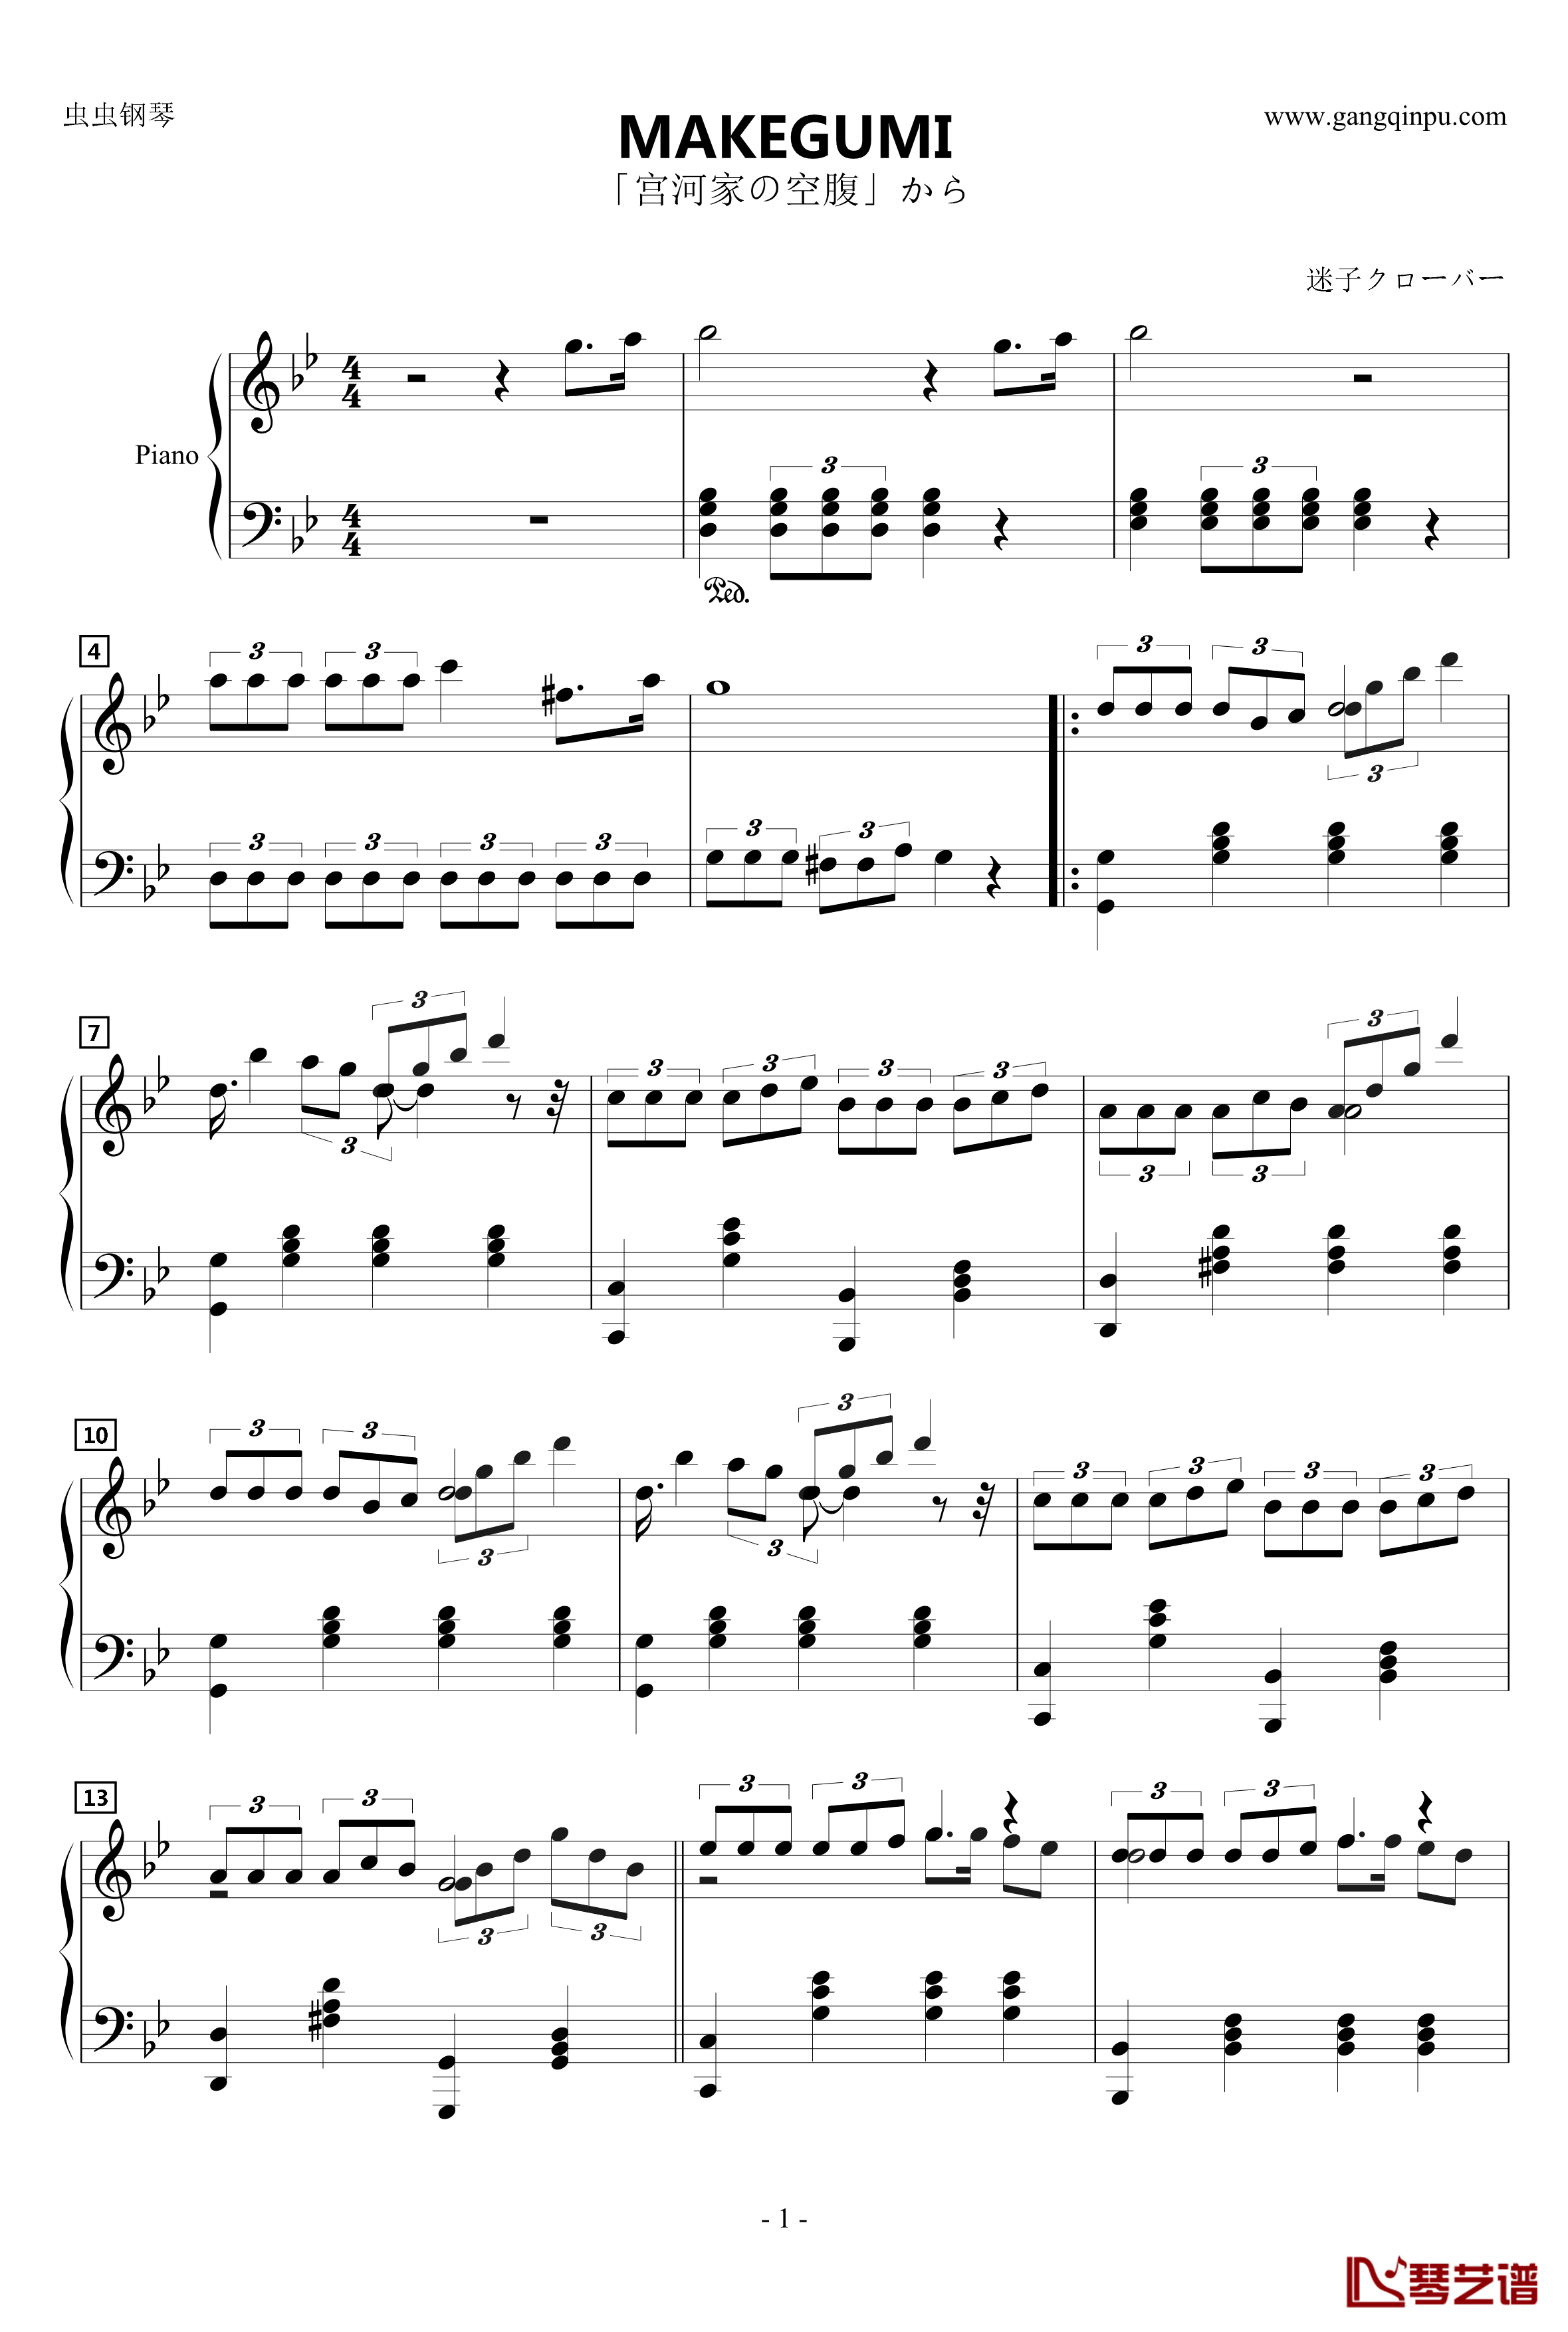 MAKEGUMI钢琴谱-tvサントラ1